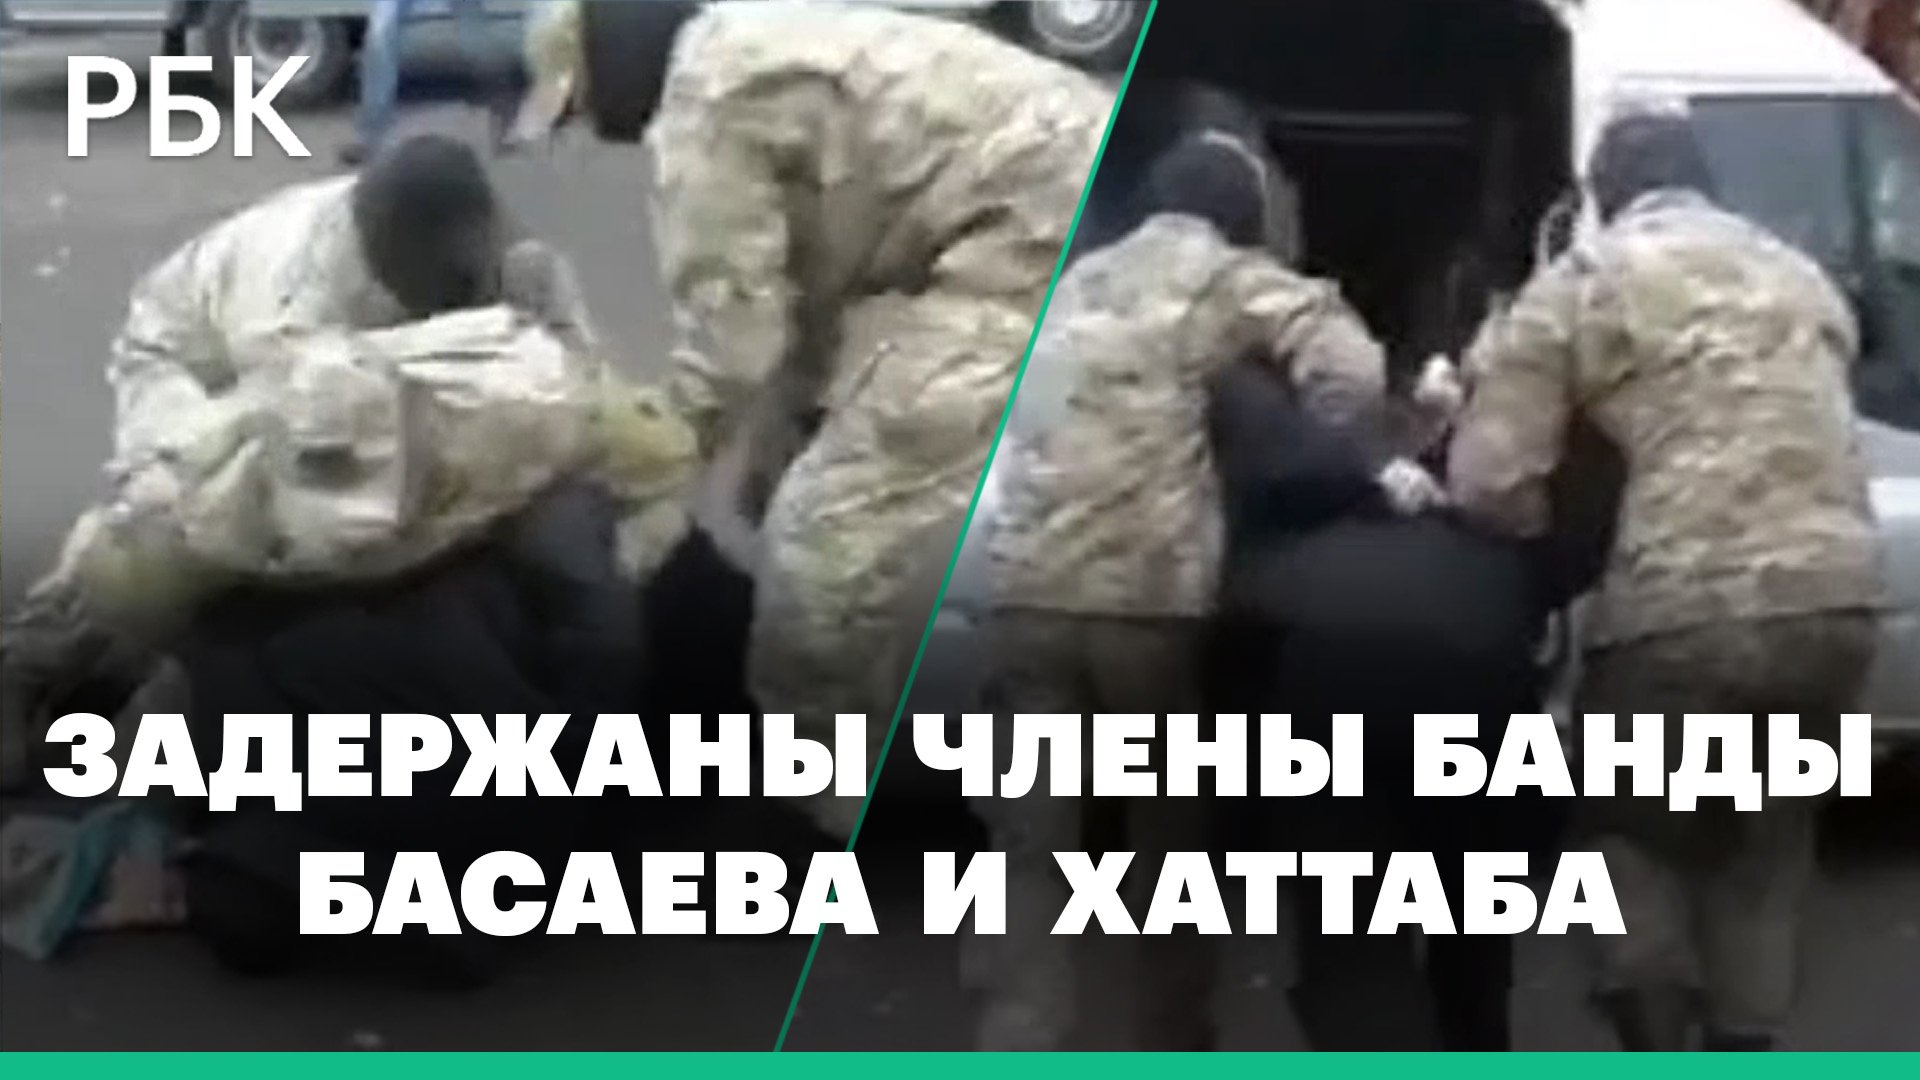 Кадры задержания СК и ФСБ двух членов банды Басаева и Хаттаба